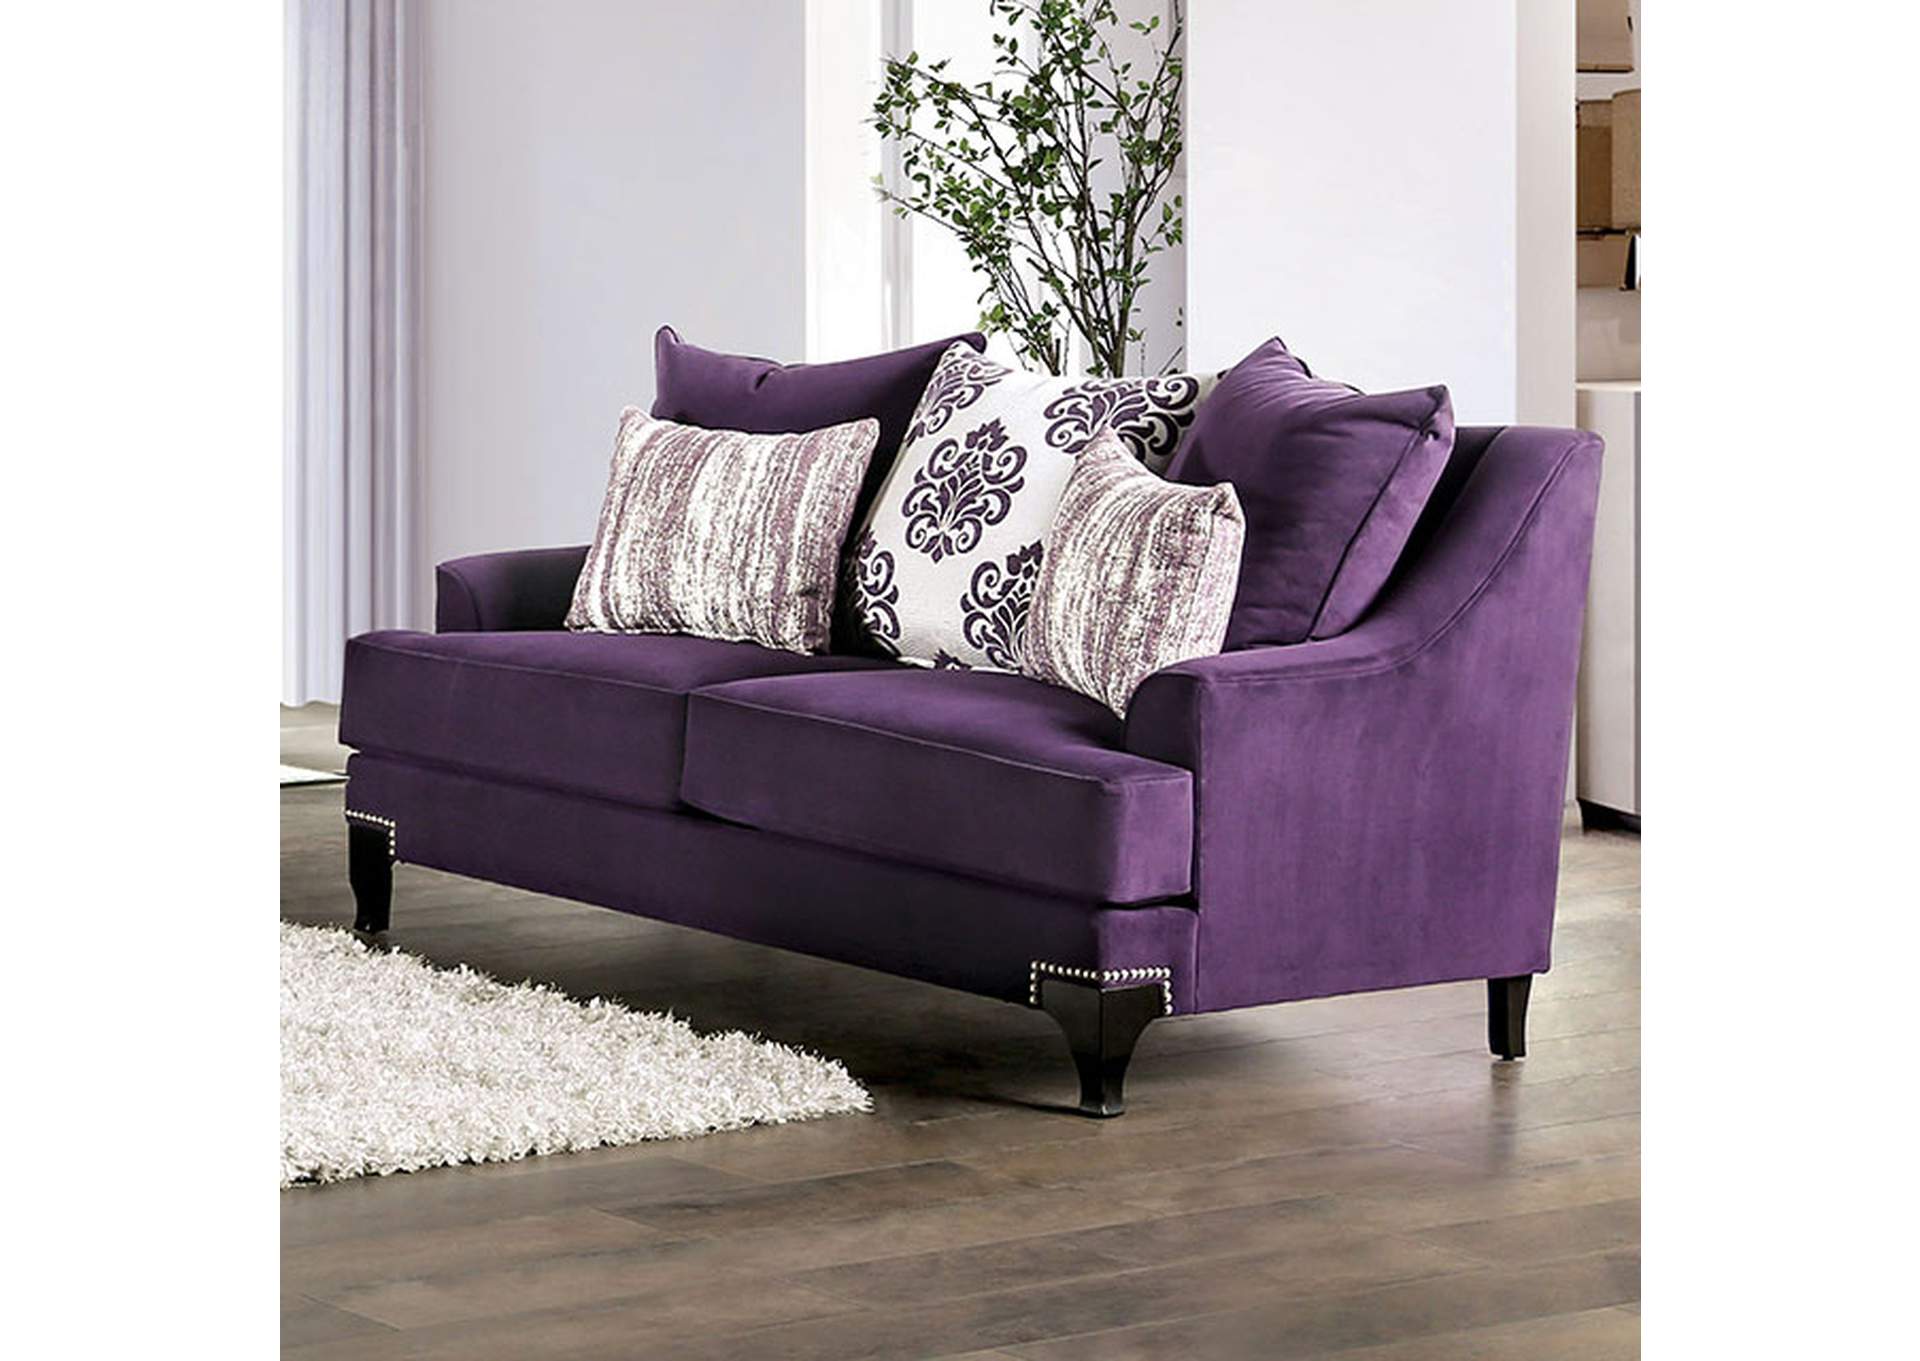 Sisseton Purple Loveseat,Furniture of America